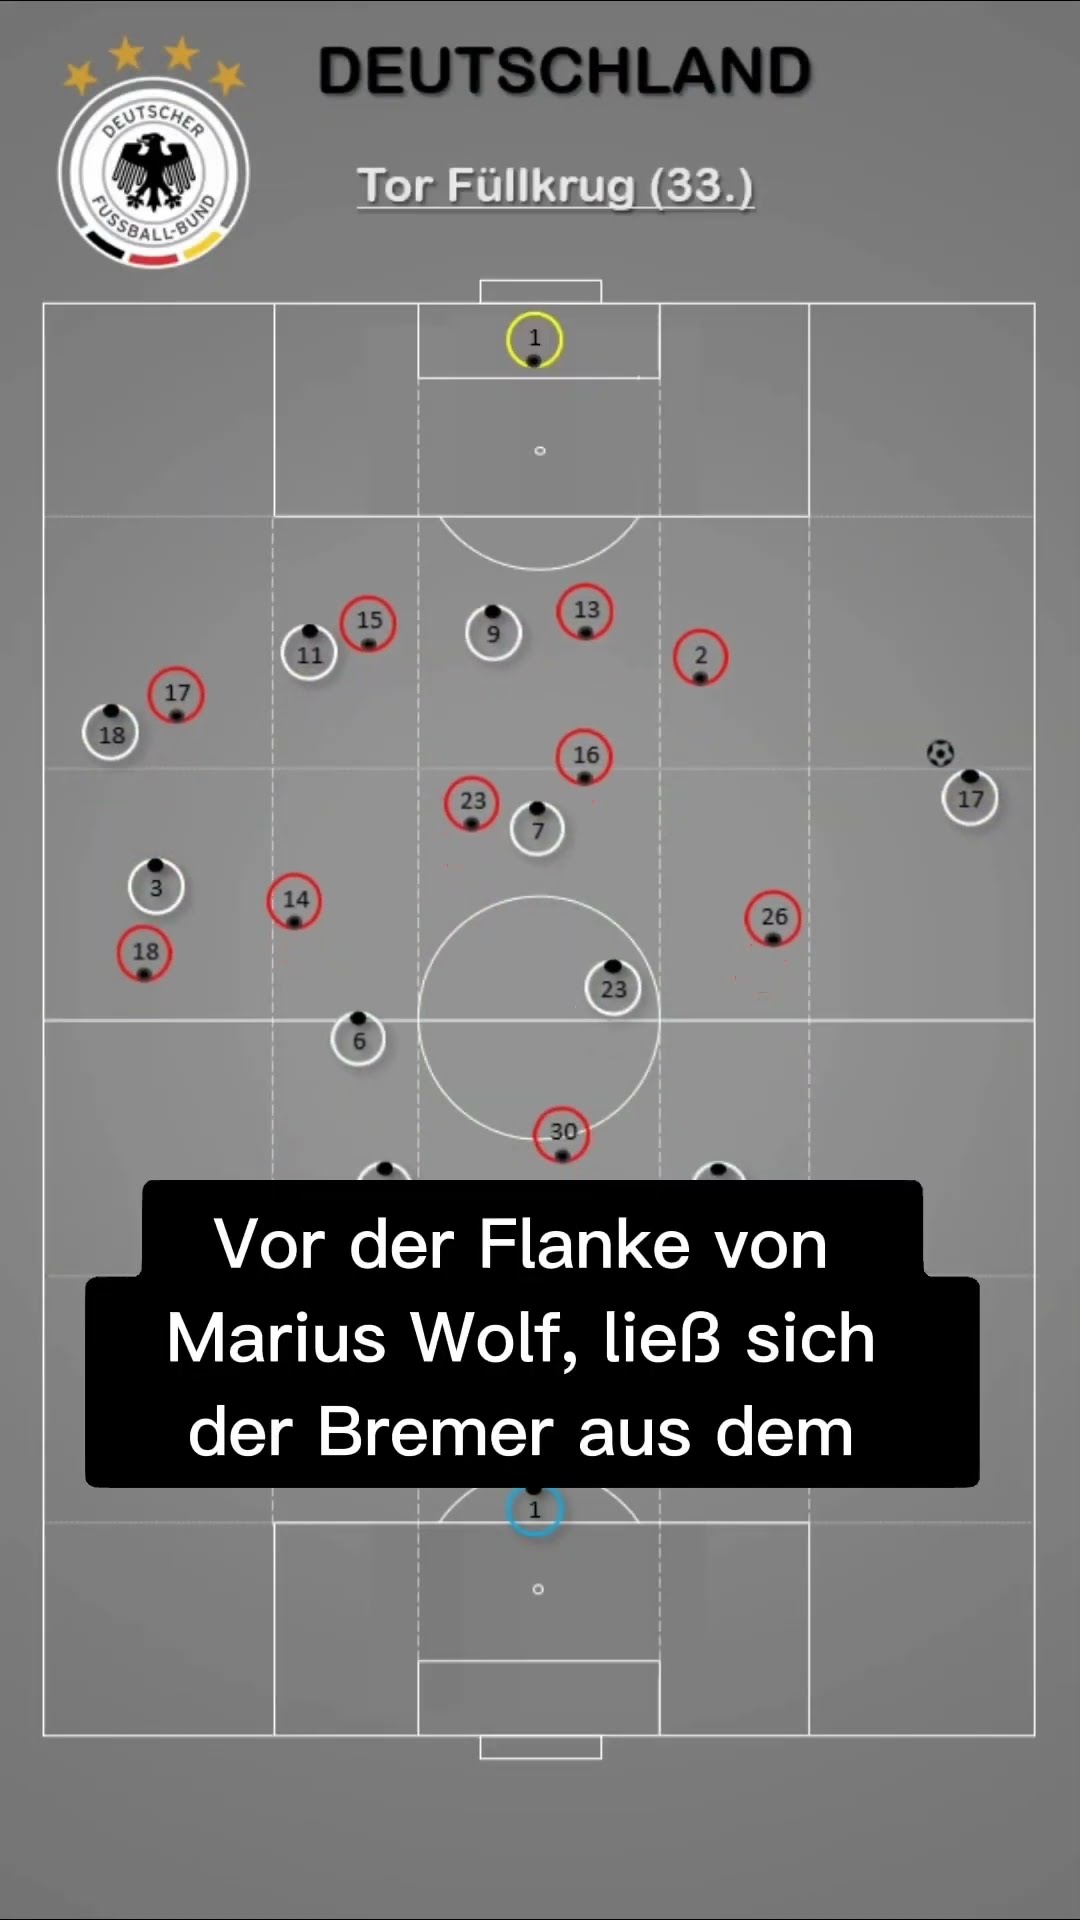 Fußball Taktik - Spielsystem 4-2-3-1